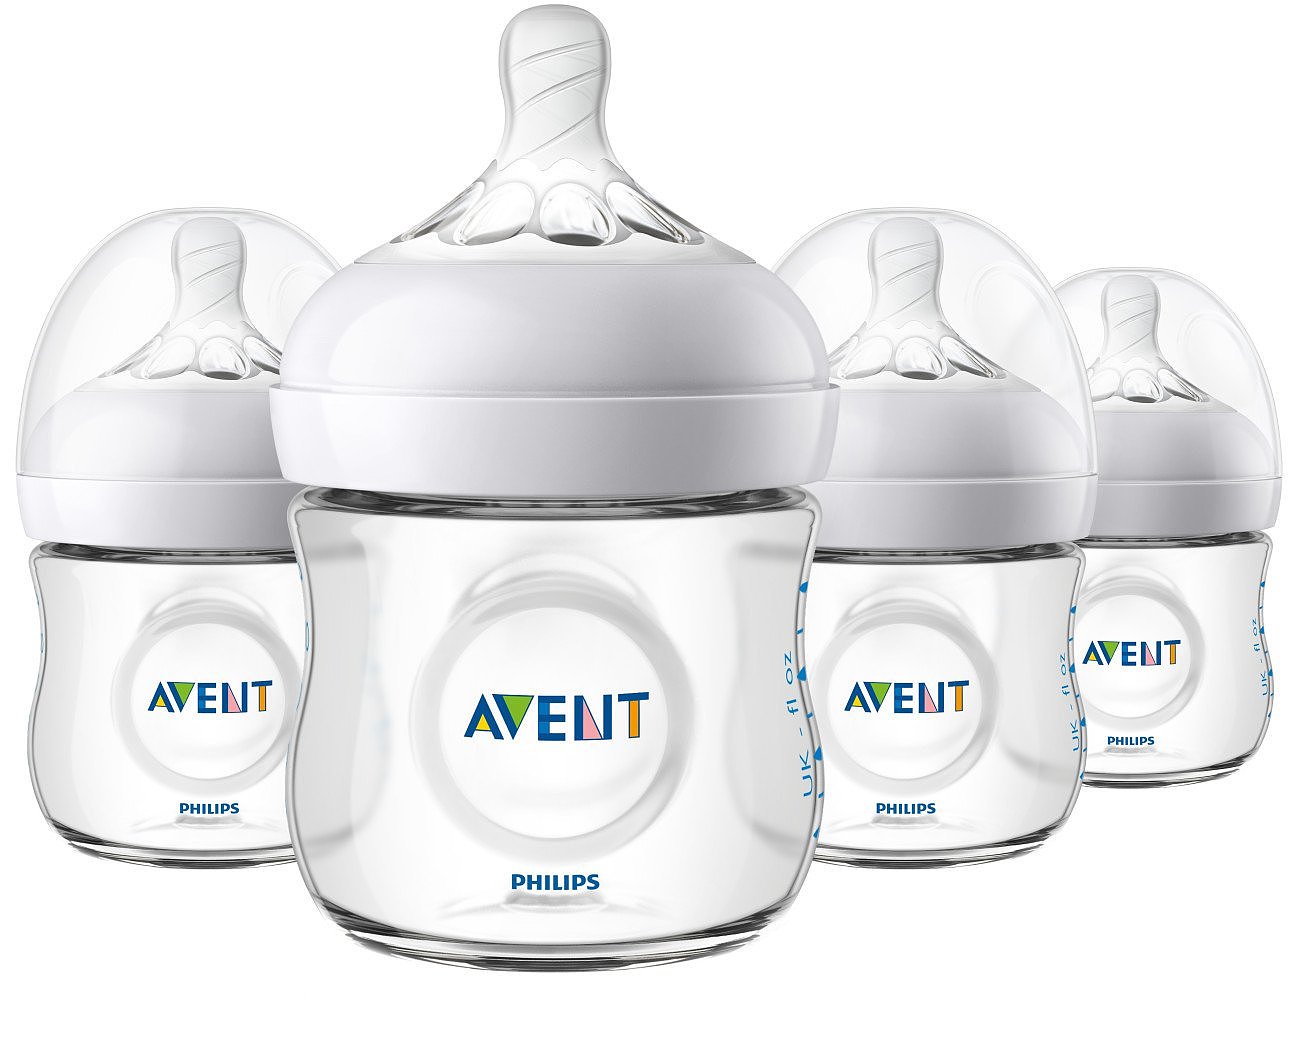 【包邮】婴儿PP塑料奶瓶宽口带手柄婴儿奶瓶母婴用品厂价直销OEM-阿里巴巴